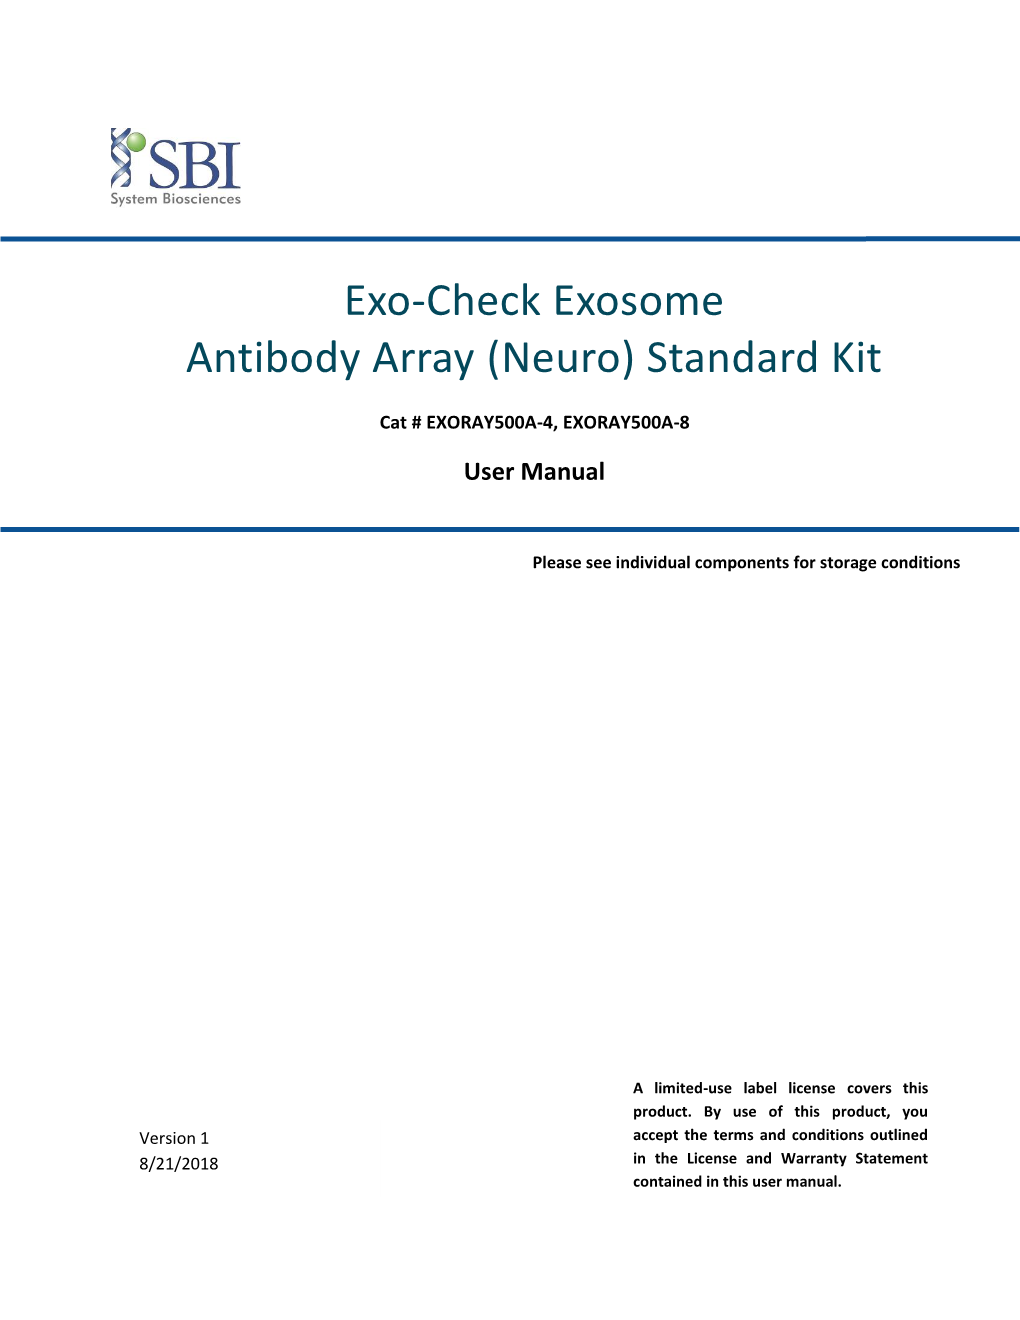 Exo-Check Exosome Antibody Array (Neuro) Standard Kit